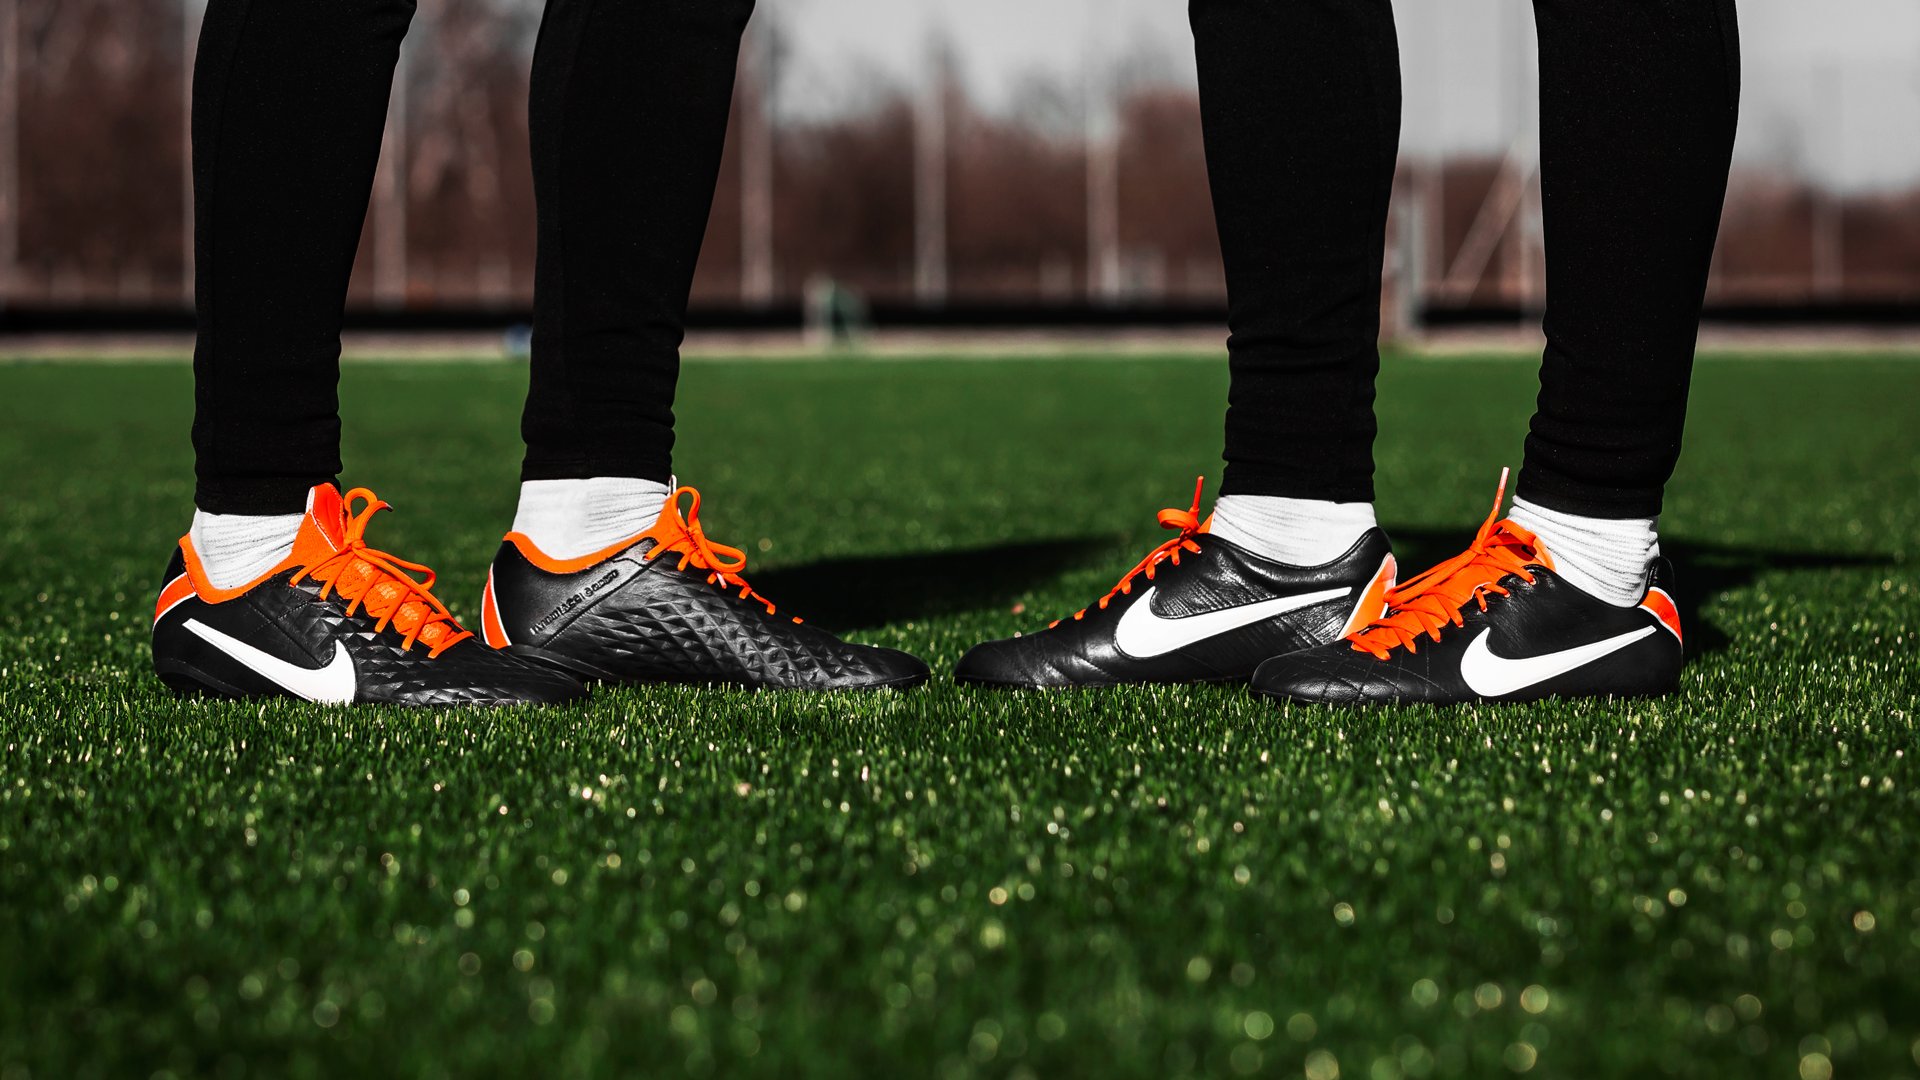 Cảm hứng được bắt nguồn từ đôi giày Nike Tiempo Legend IV từ năm 2011.